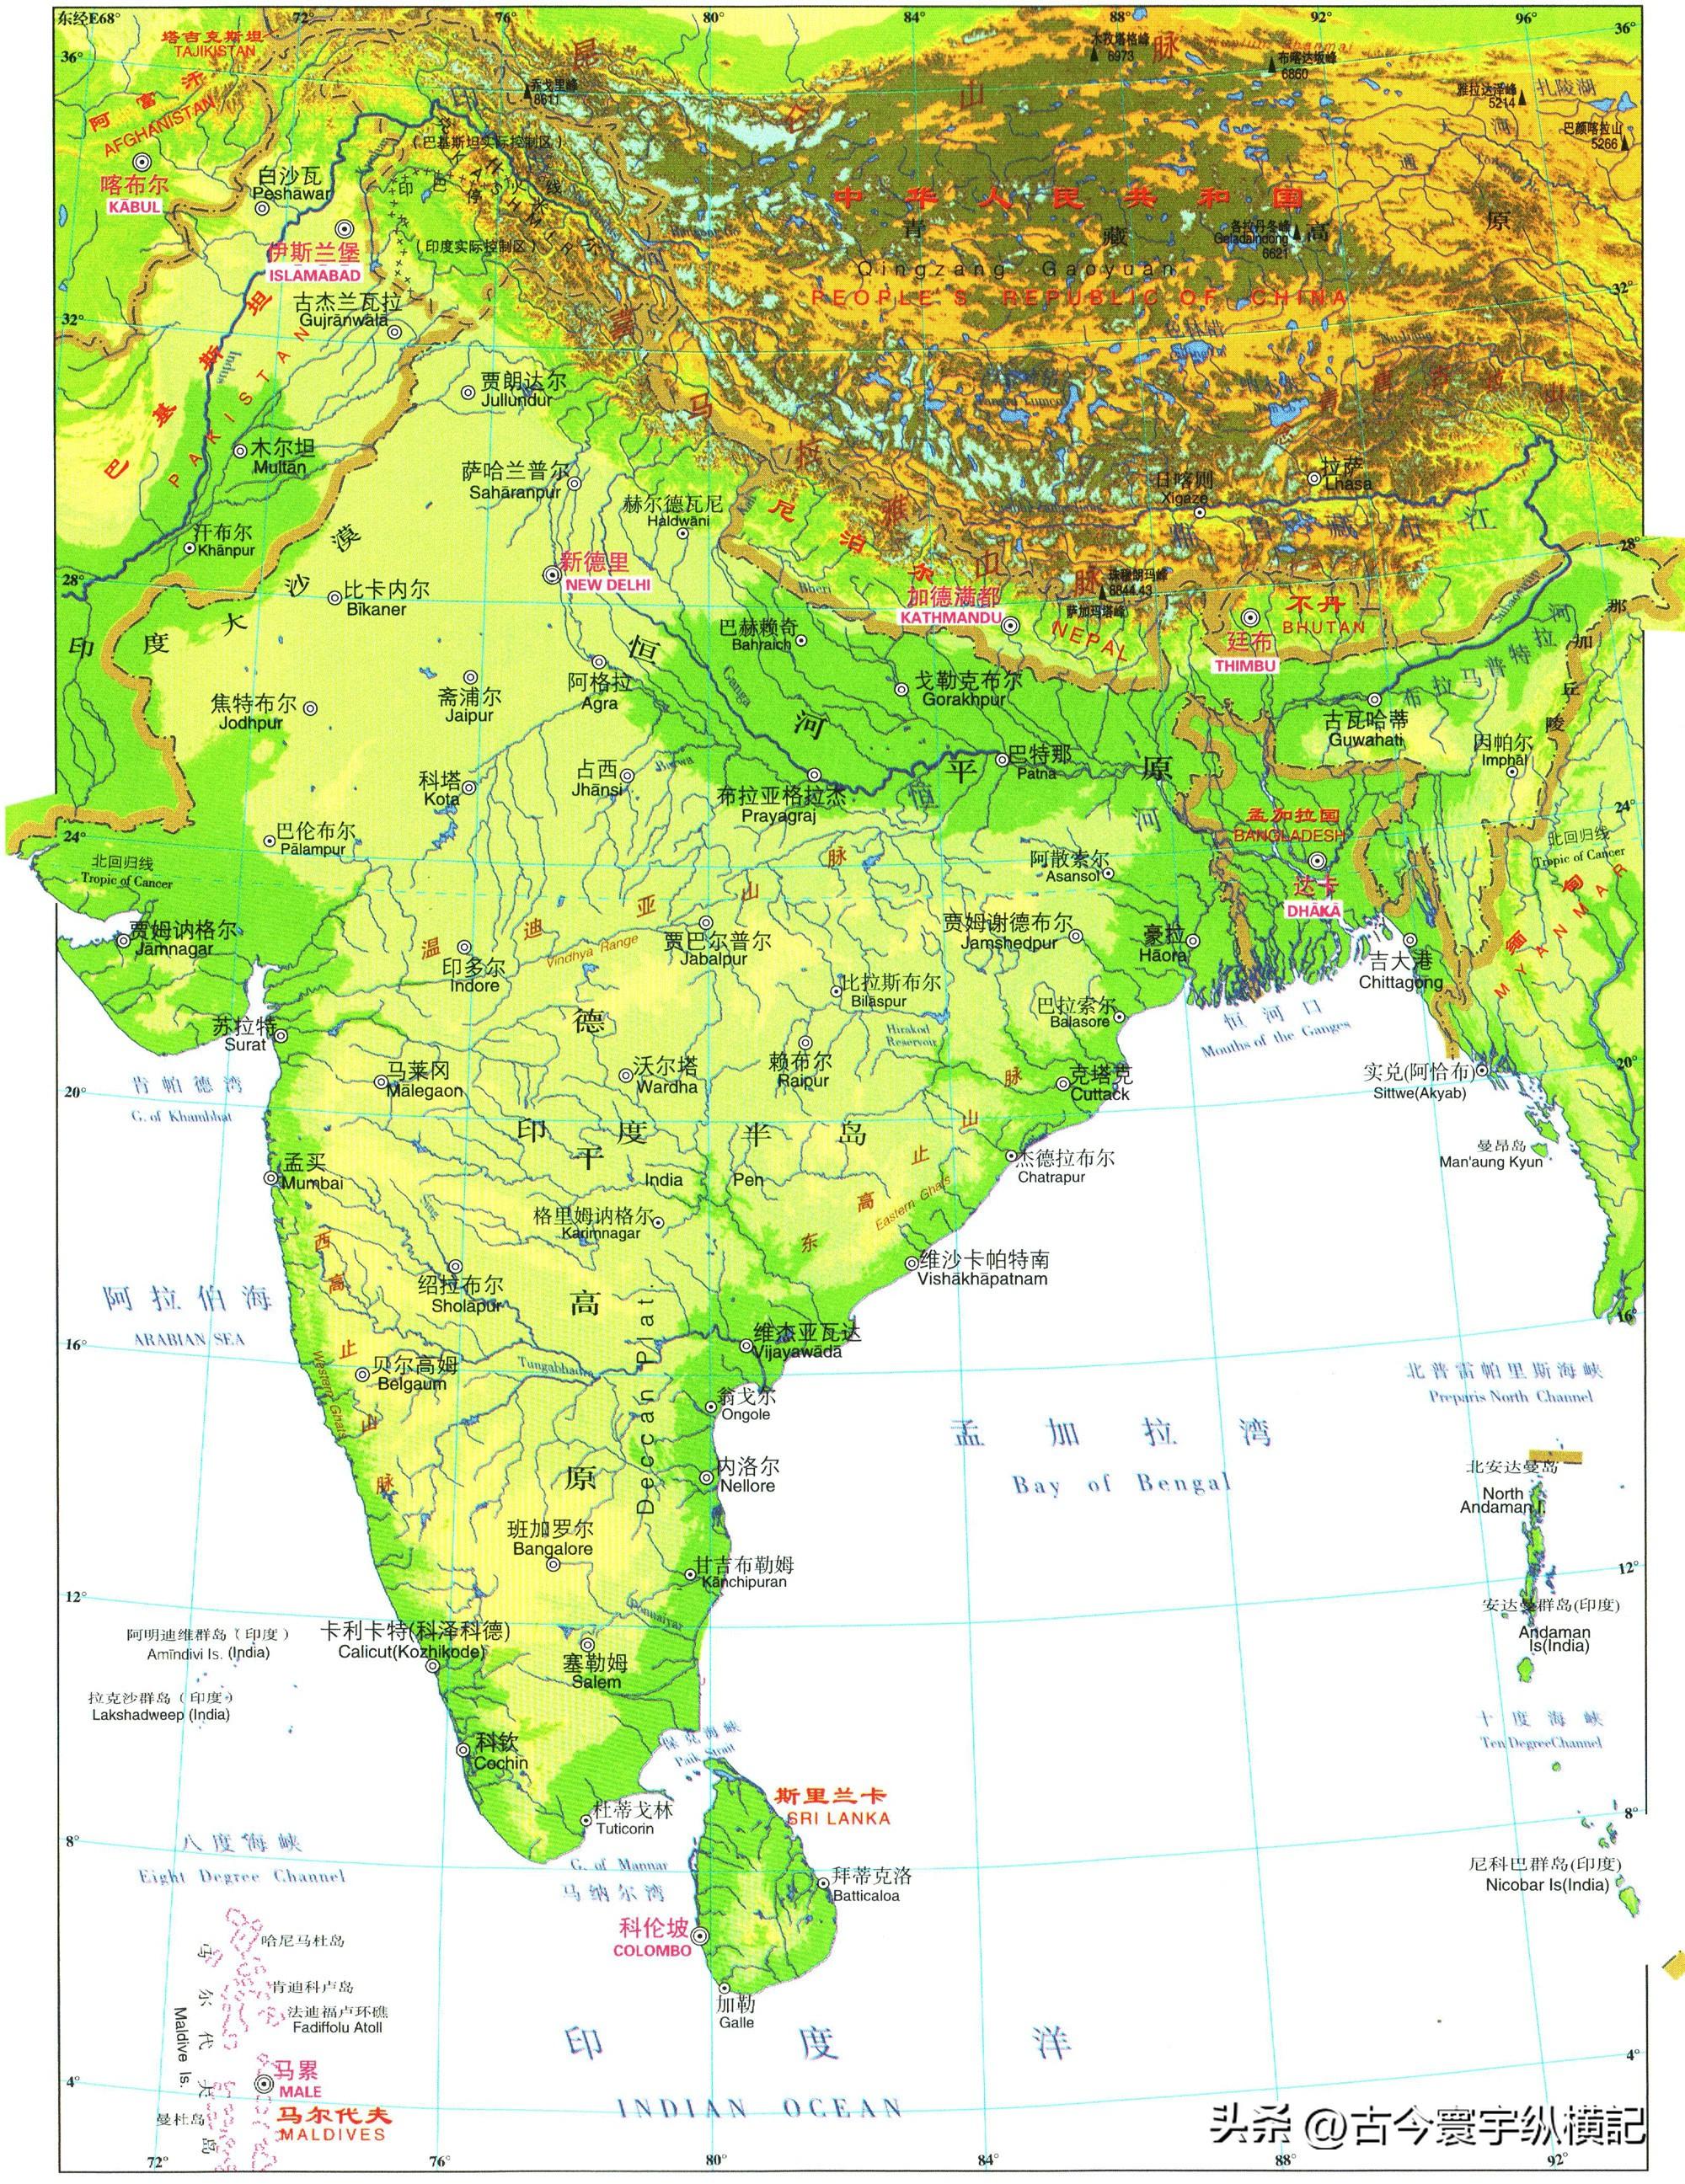 印度斯里兰卡尼泊尔孟加拉国马尔代夫不丹巴基斯坦南亚国家地形图